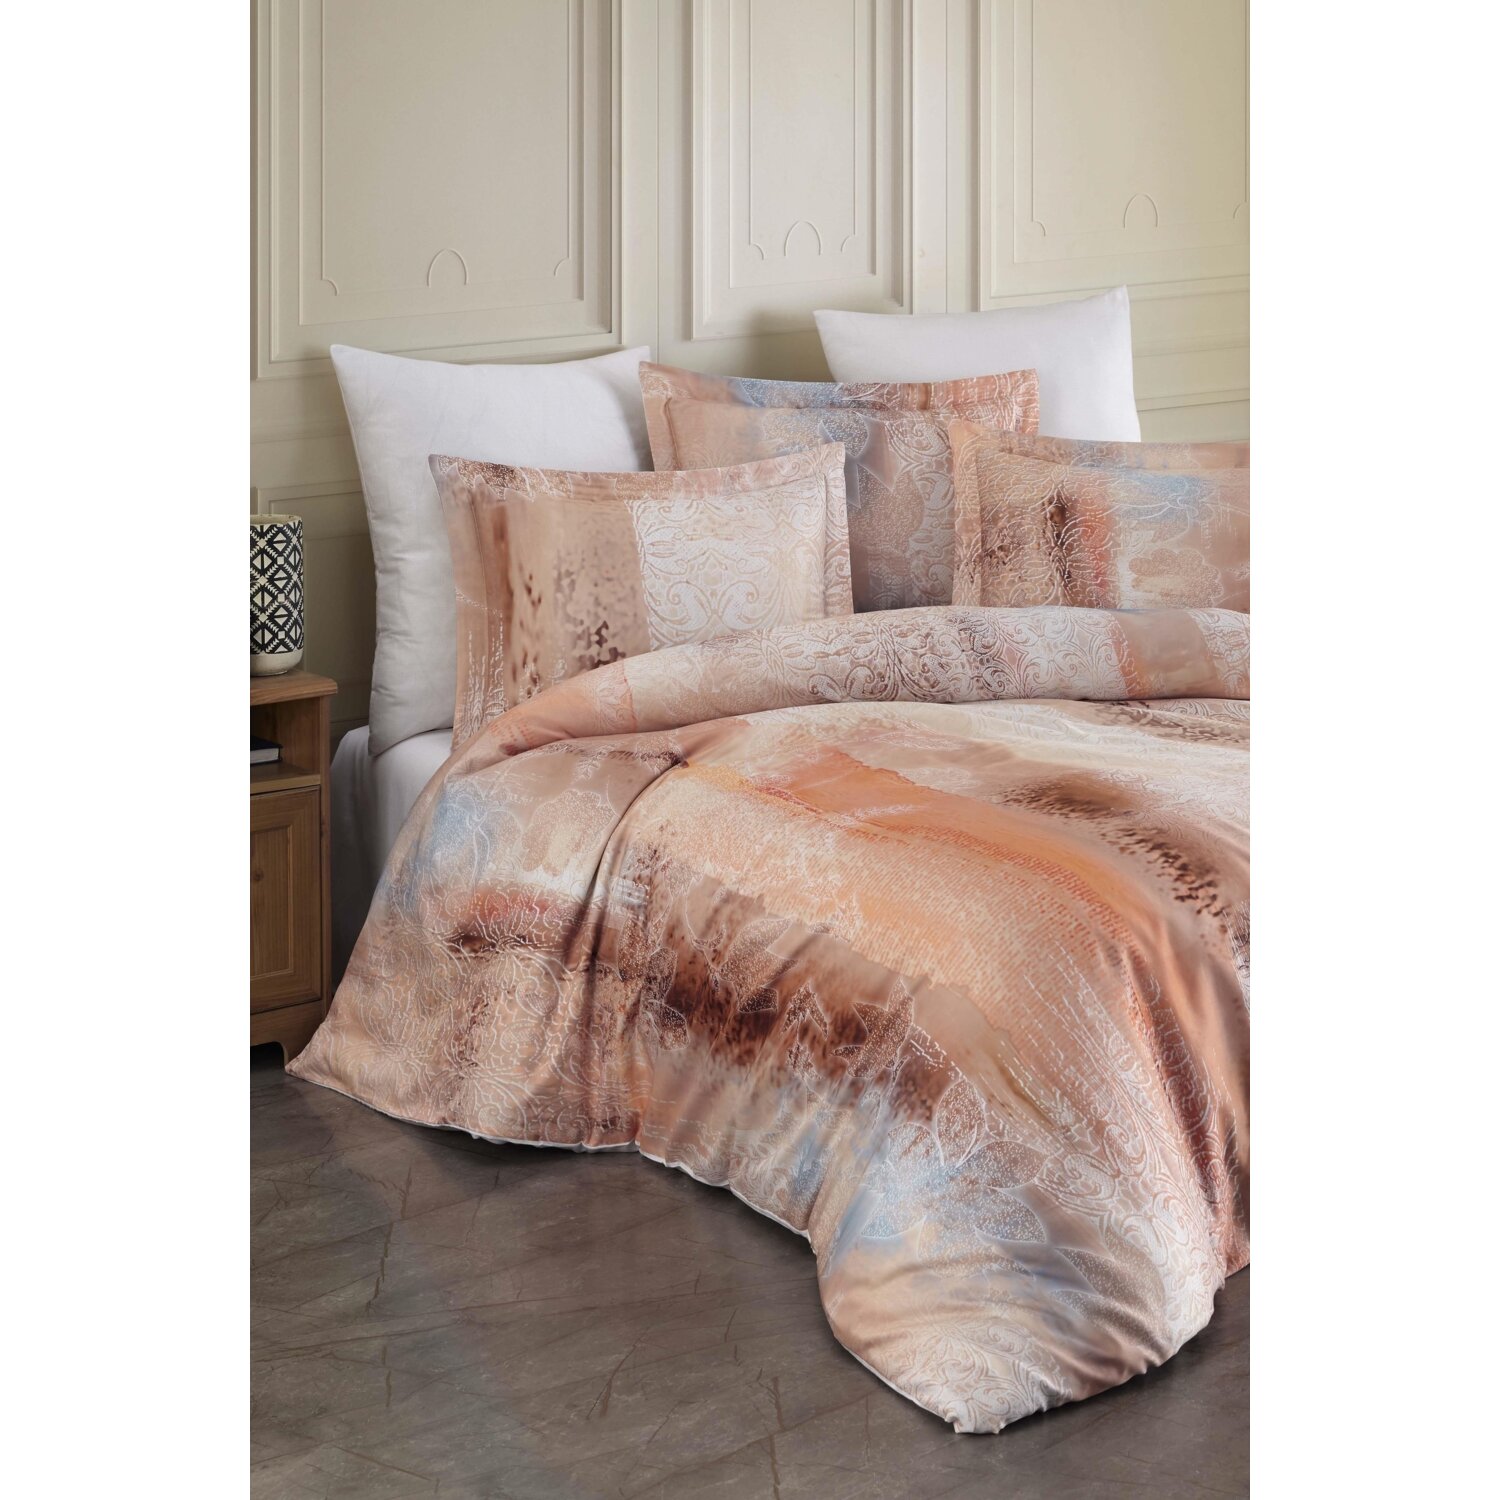 Varol Laura Home Комплект постельного белья из бамбукового атласа семейного размера - Delmore